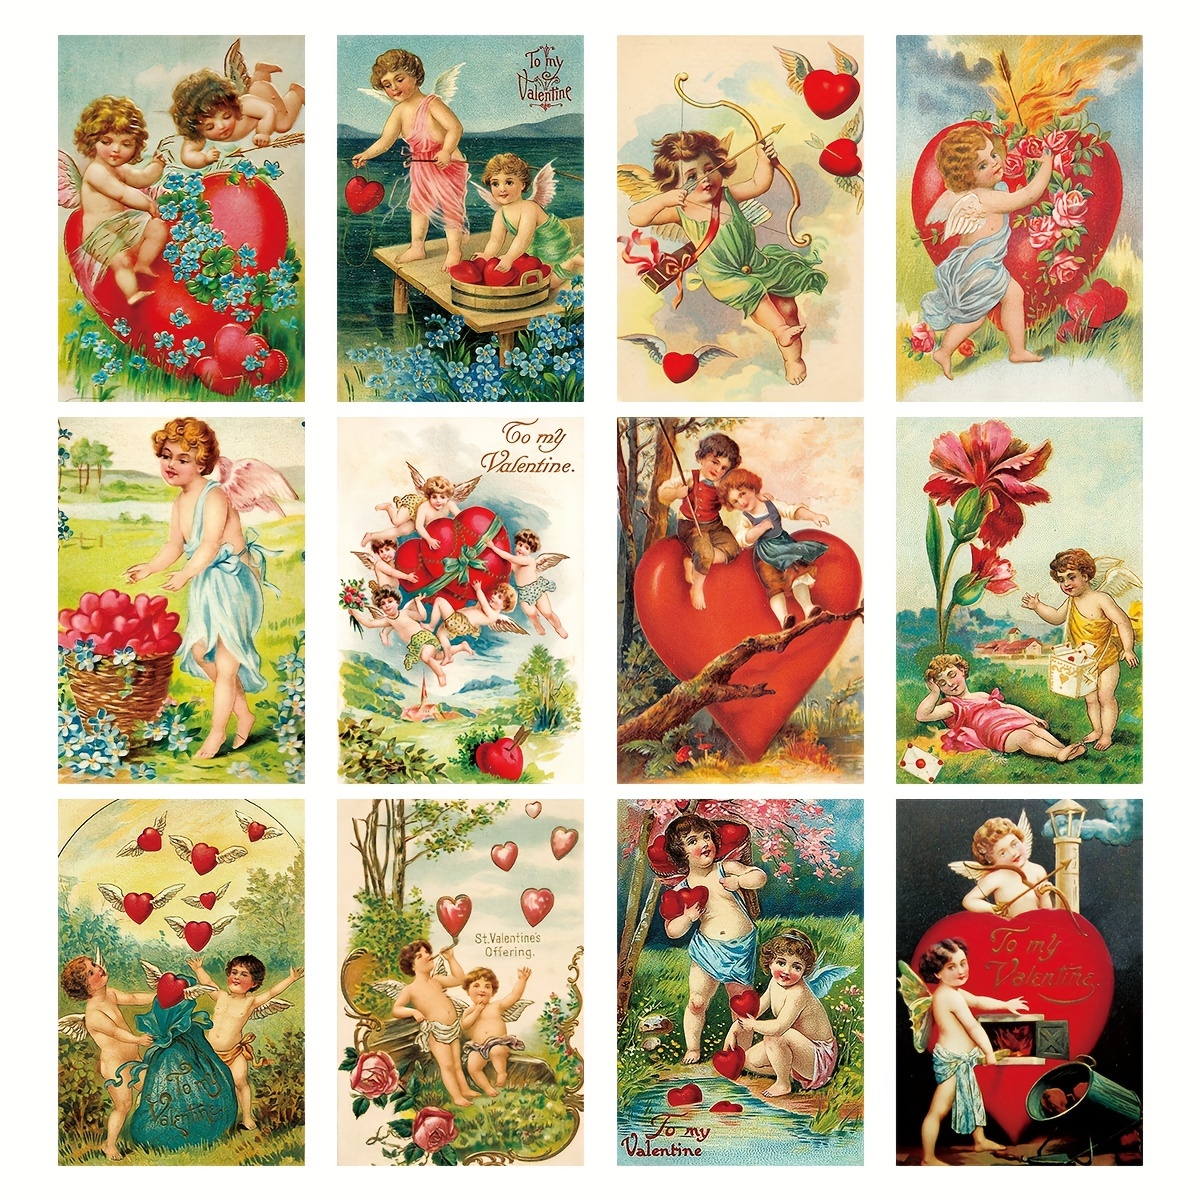 Vintage Valentine Card Images Digital Collage Sheet 1 for Altered